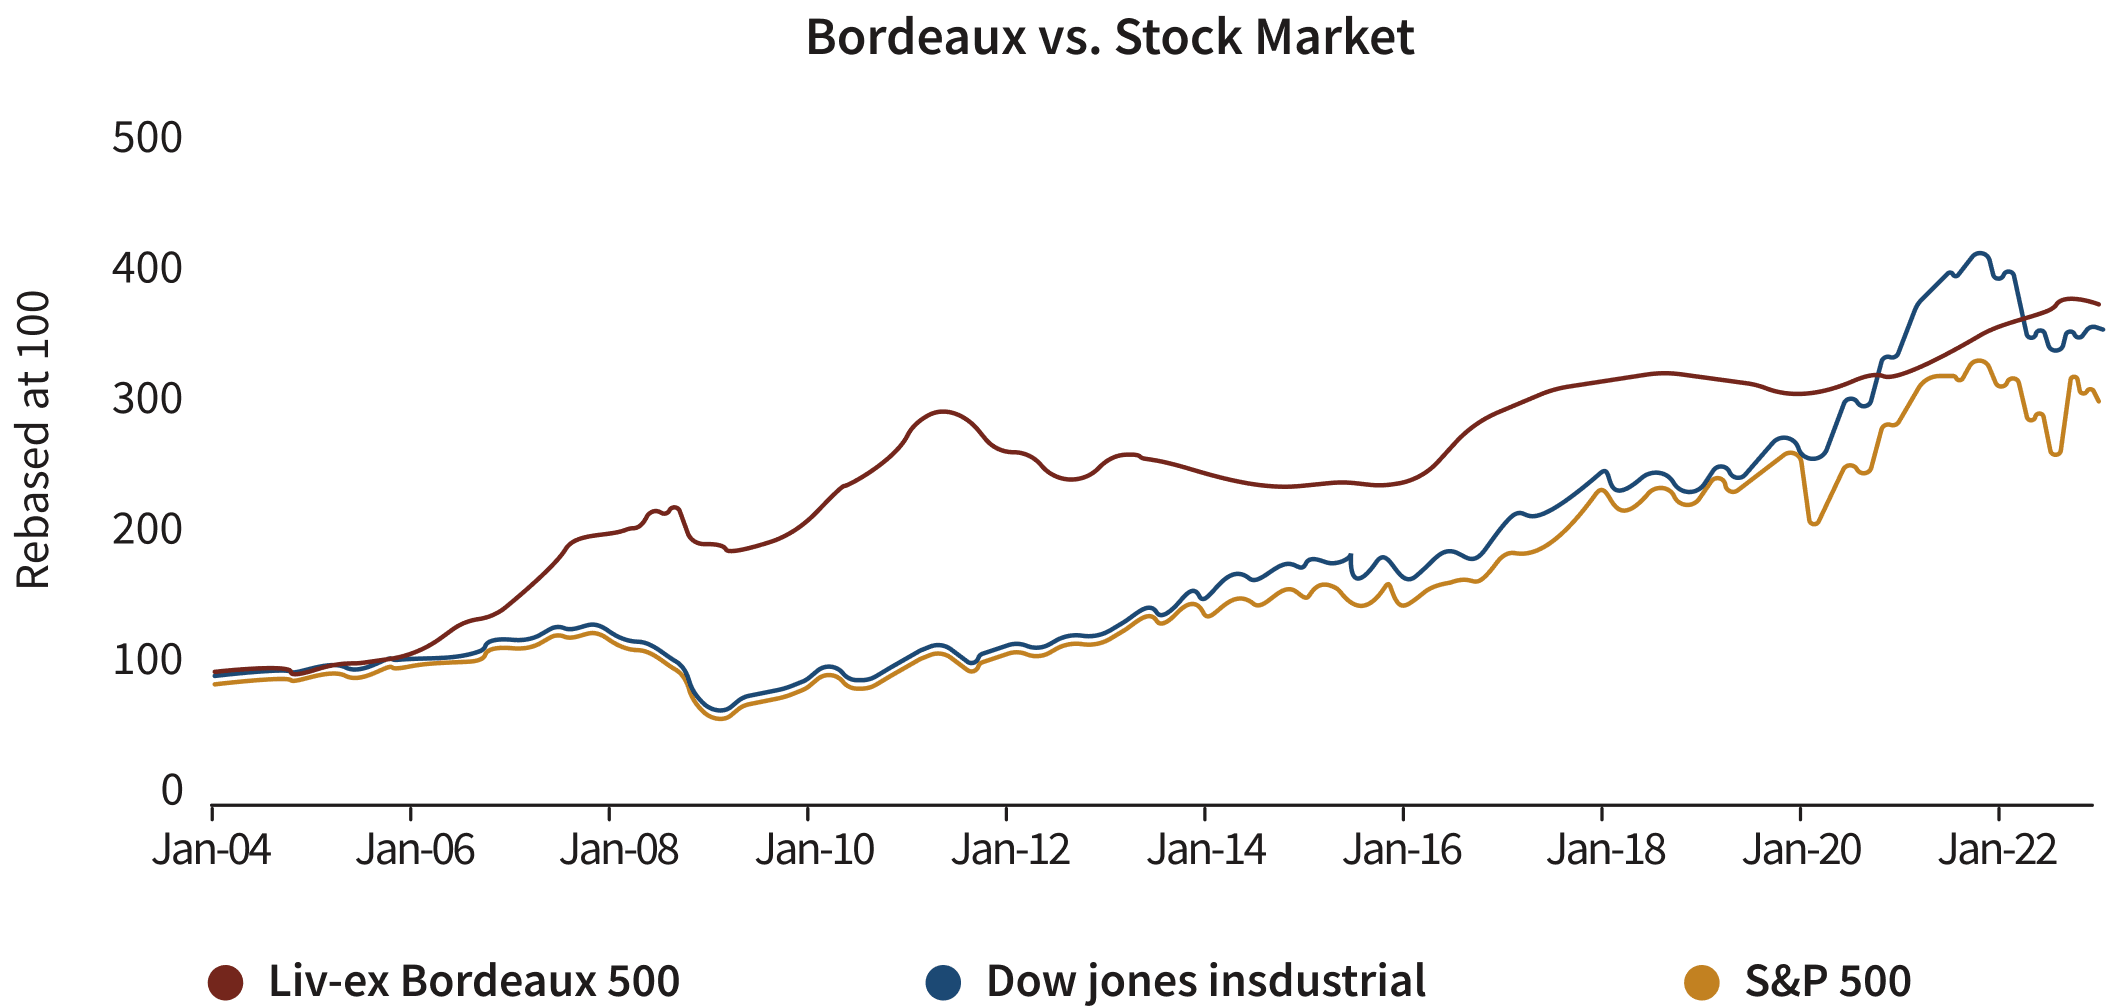 Bordeaux vs. Stock Market